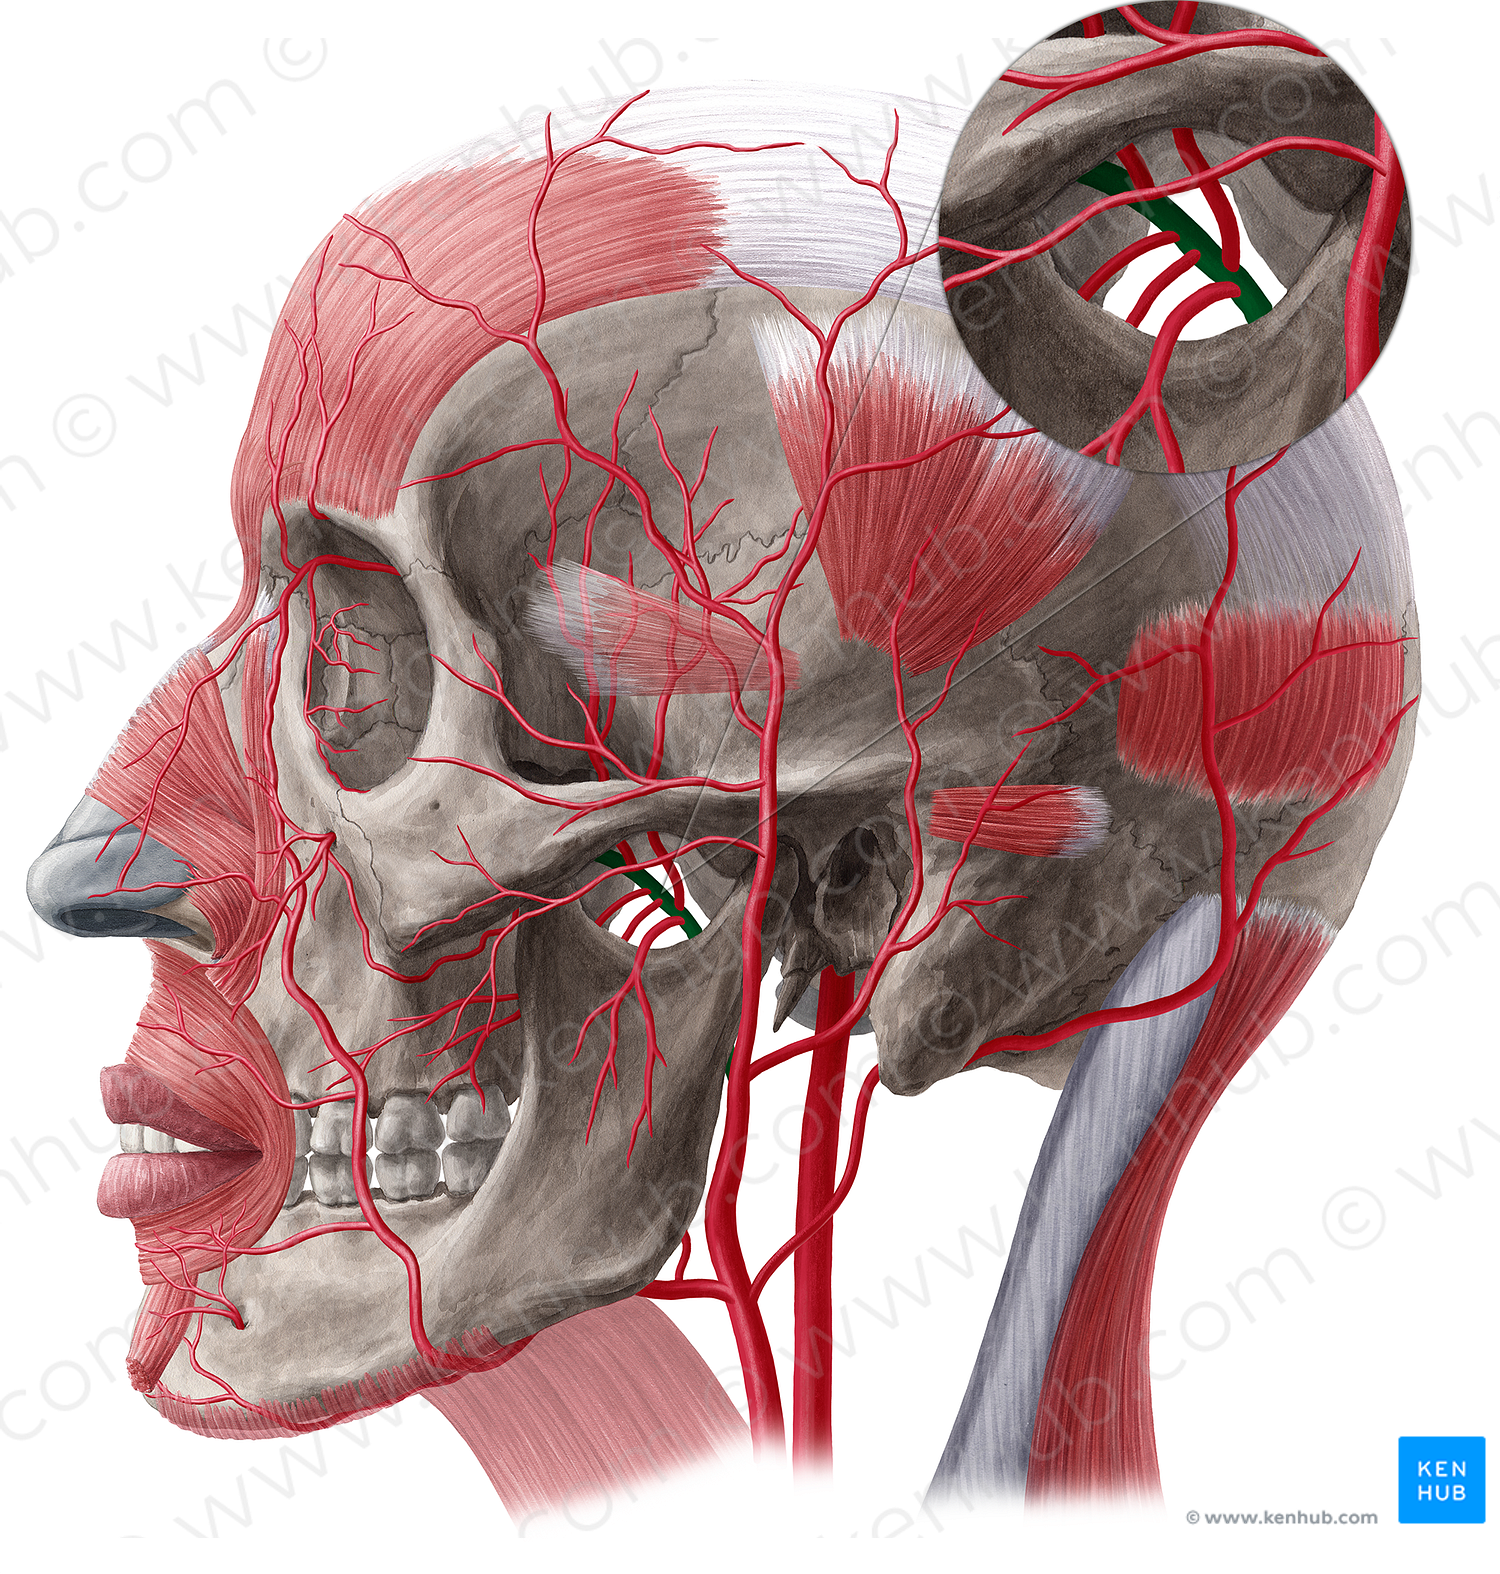 Maxillary artery (#20514)